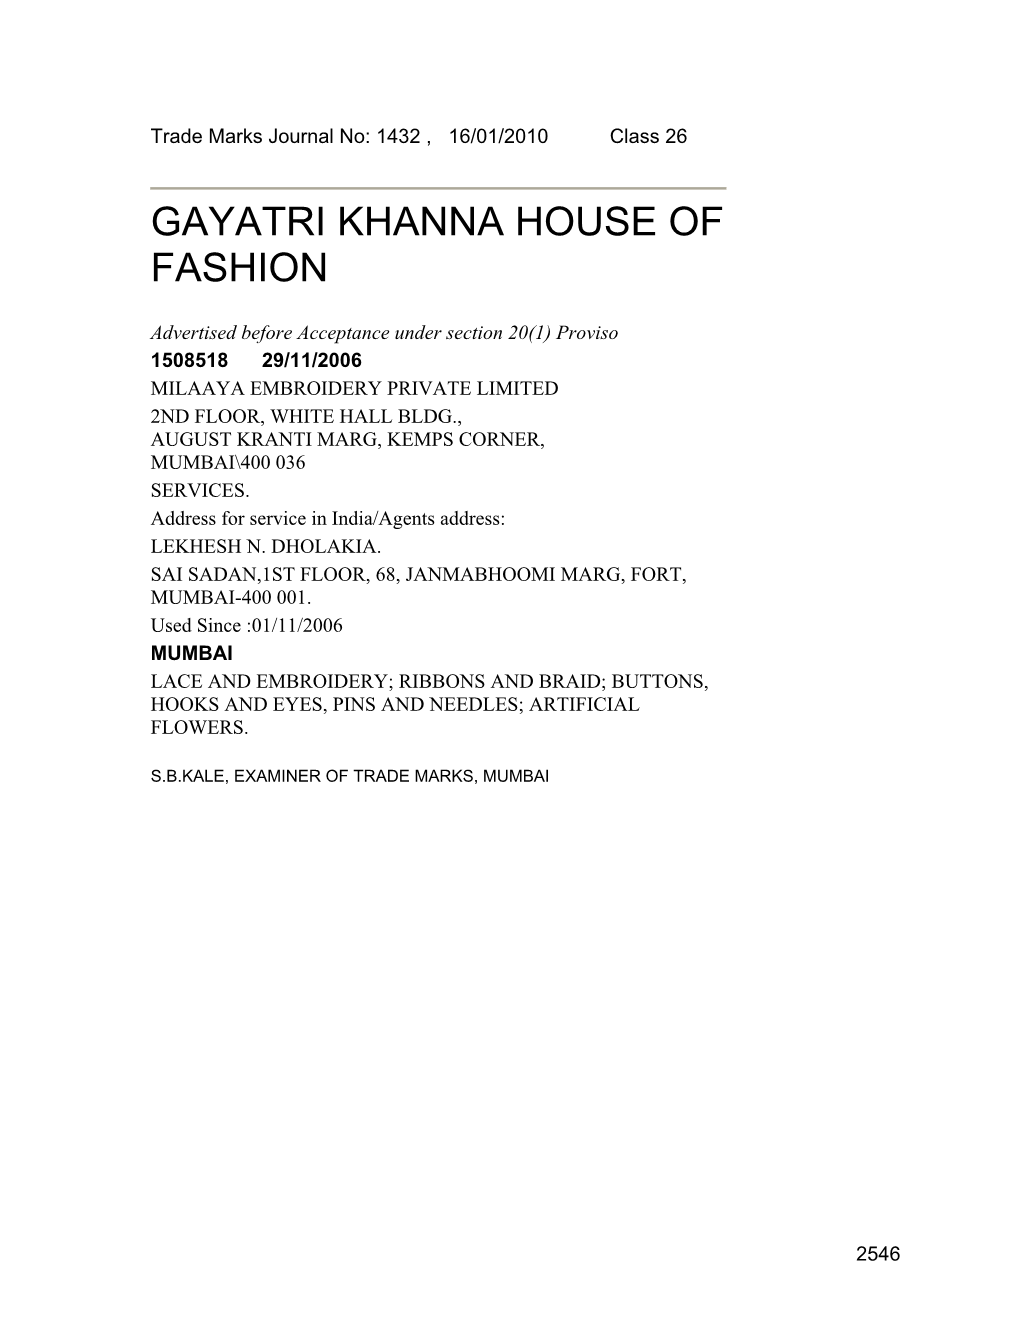 Gayatri Khanna House of Fashion